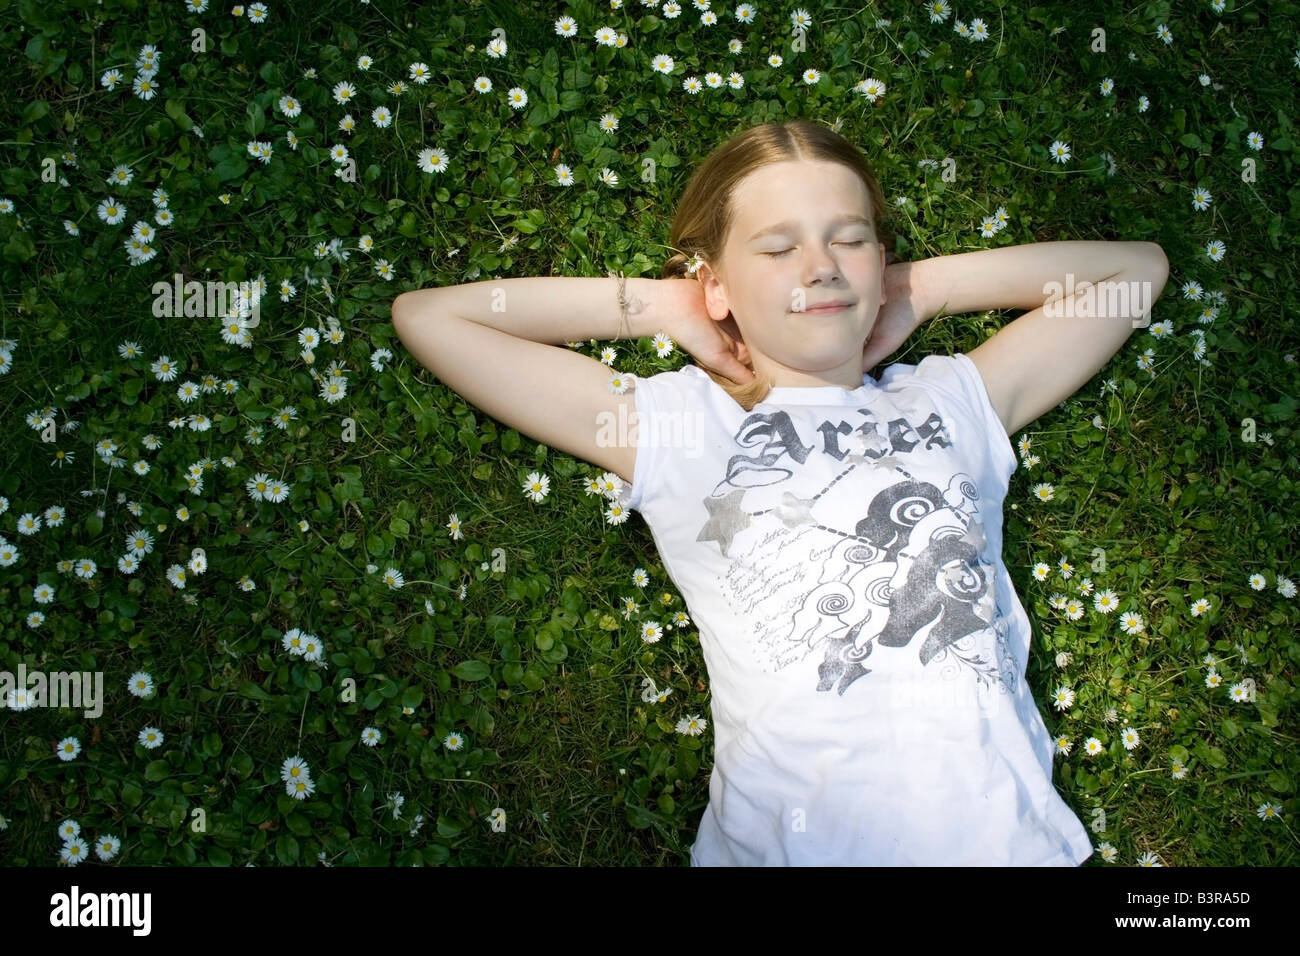 Giovane ragazza distesa in erba pieno di margherite Foto Stock